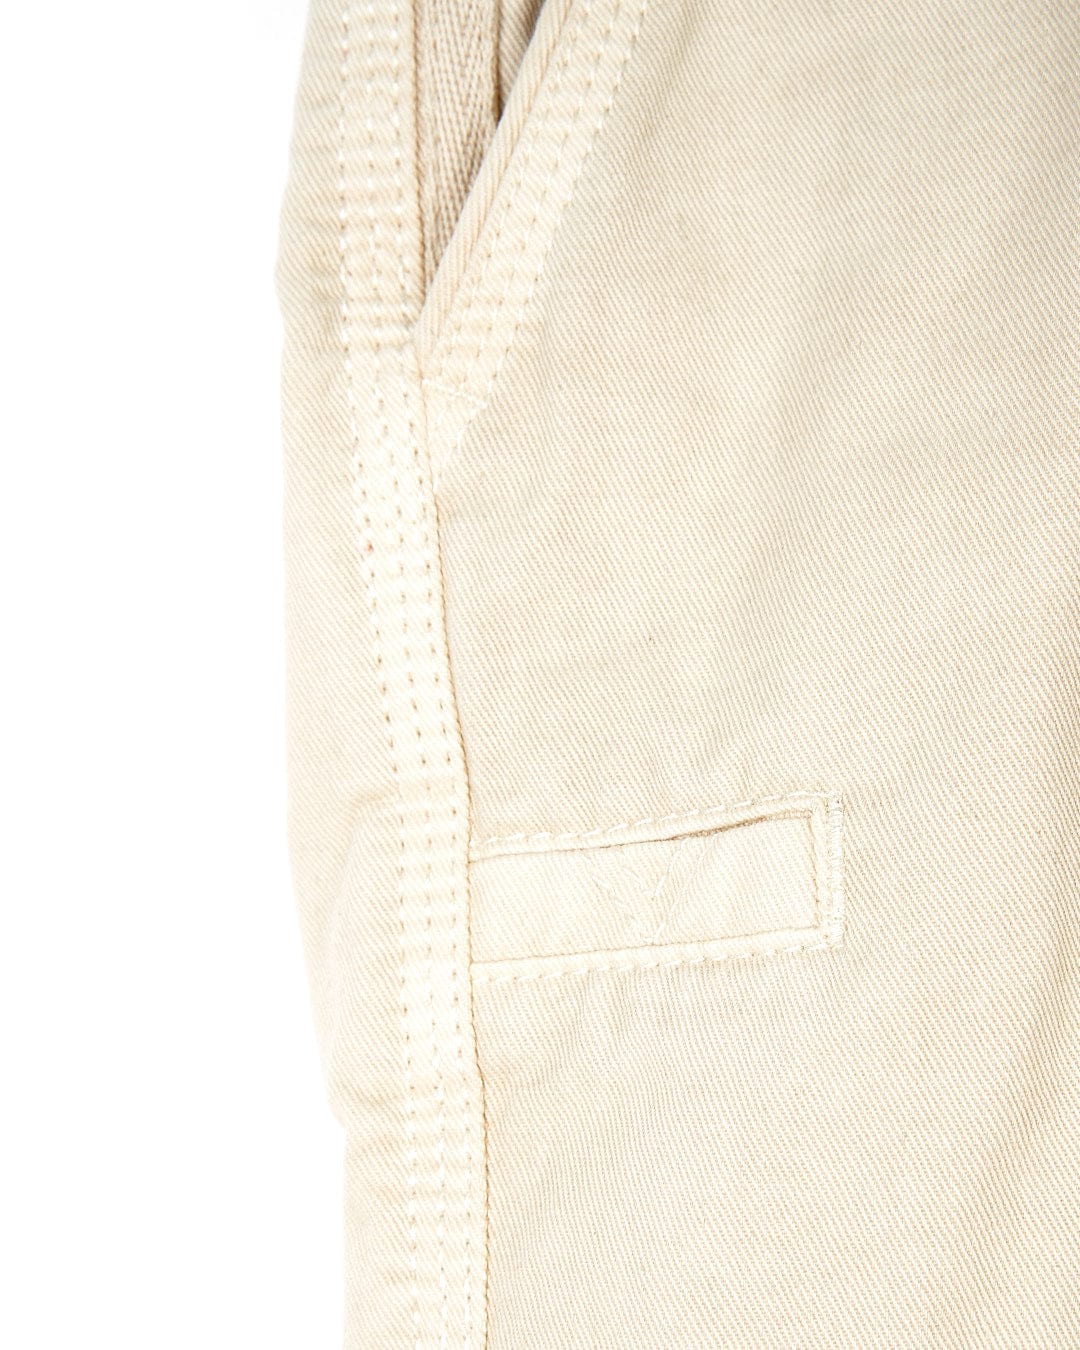 A close up of a pair of Saltrock Sennen - Mens Chino Short - Natural pants.